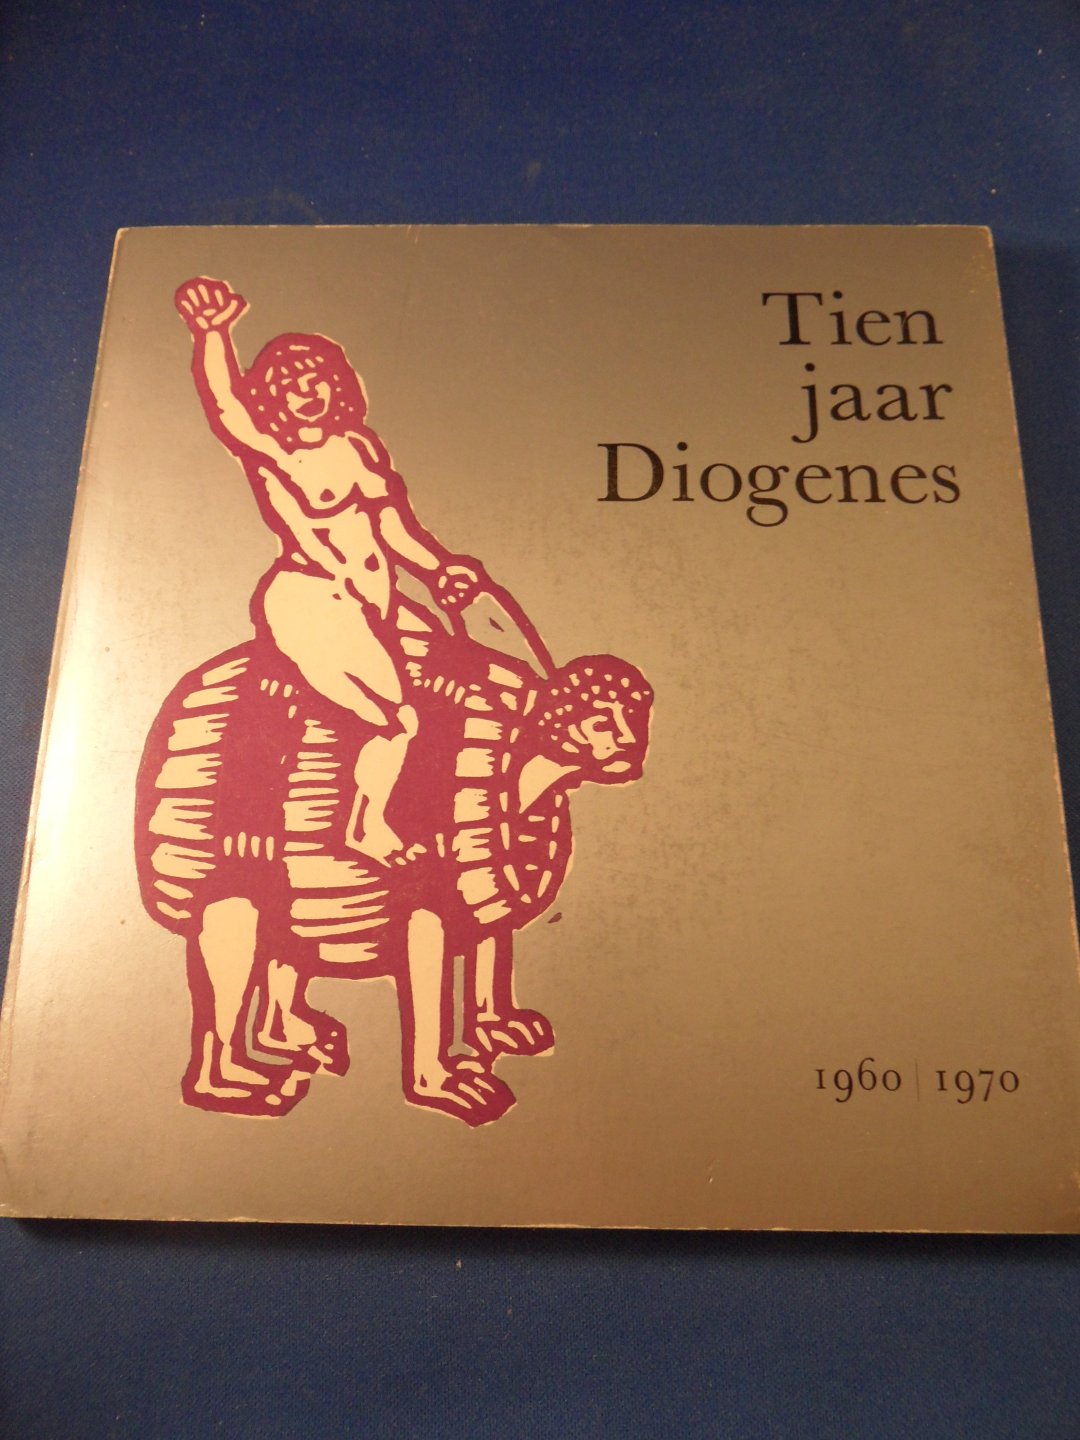  - Tien jaar Diogenes 1960-1970, incl. grammofoonplaatje